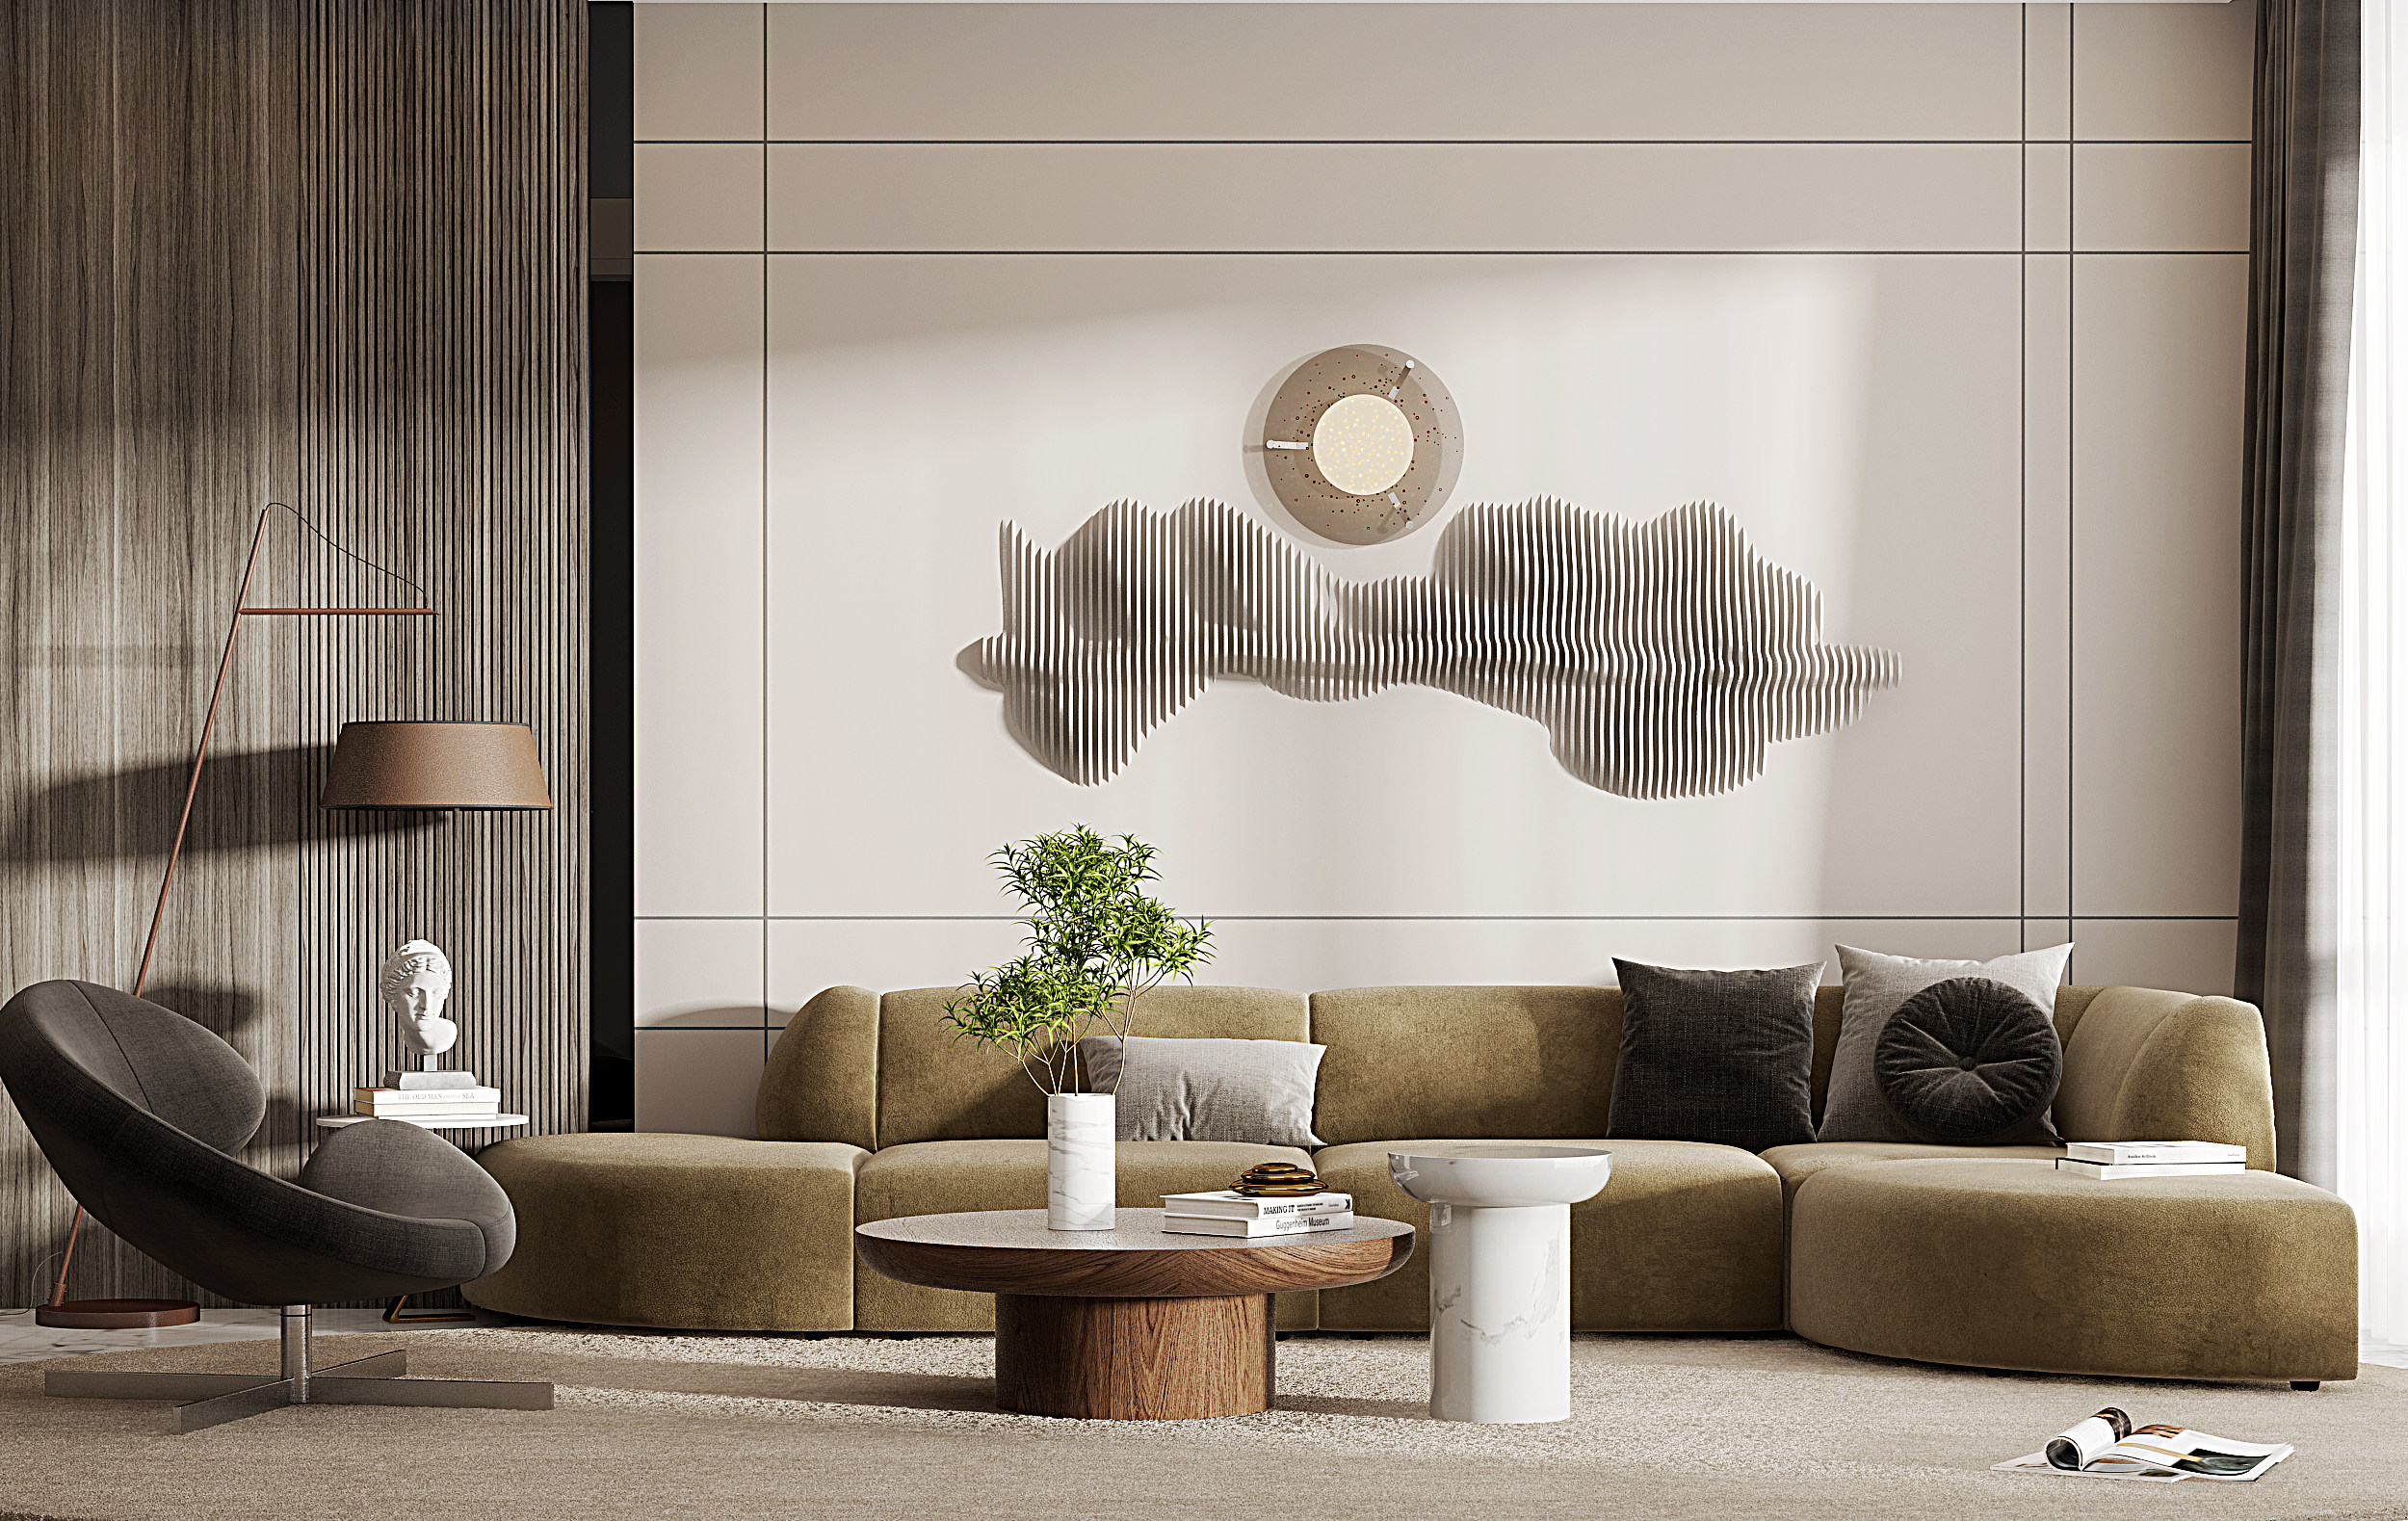 现代沙发茶几组合3d模型下载